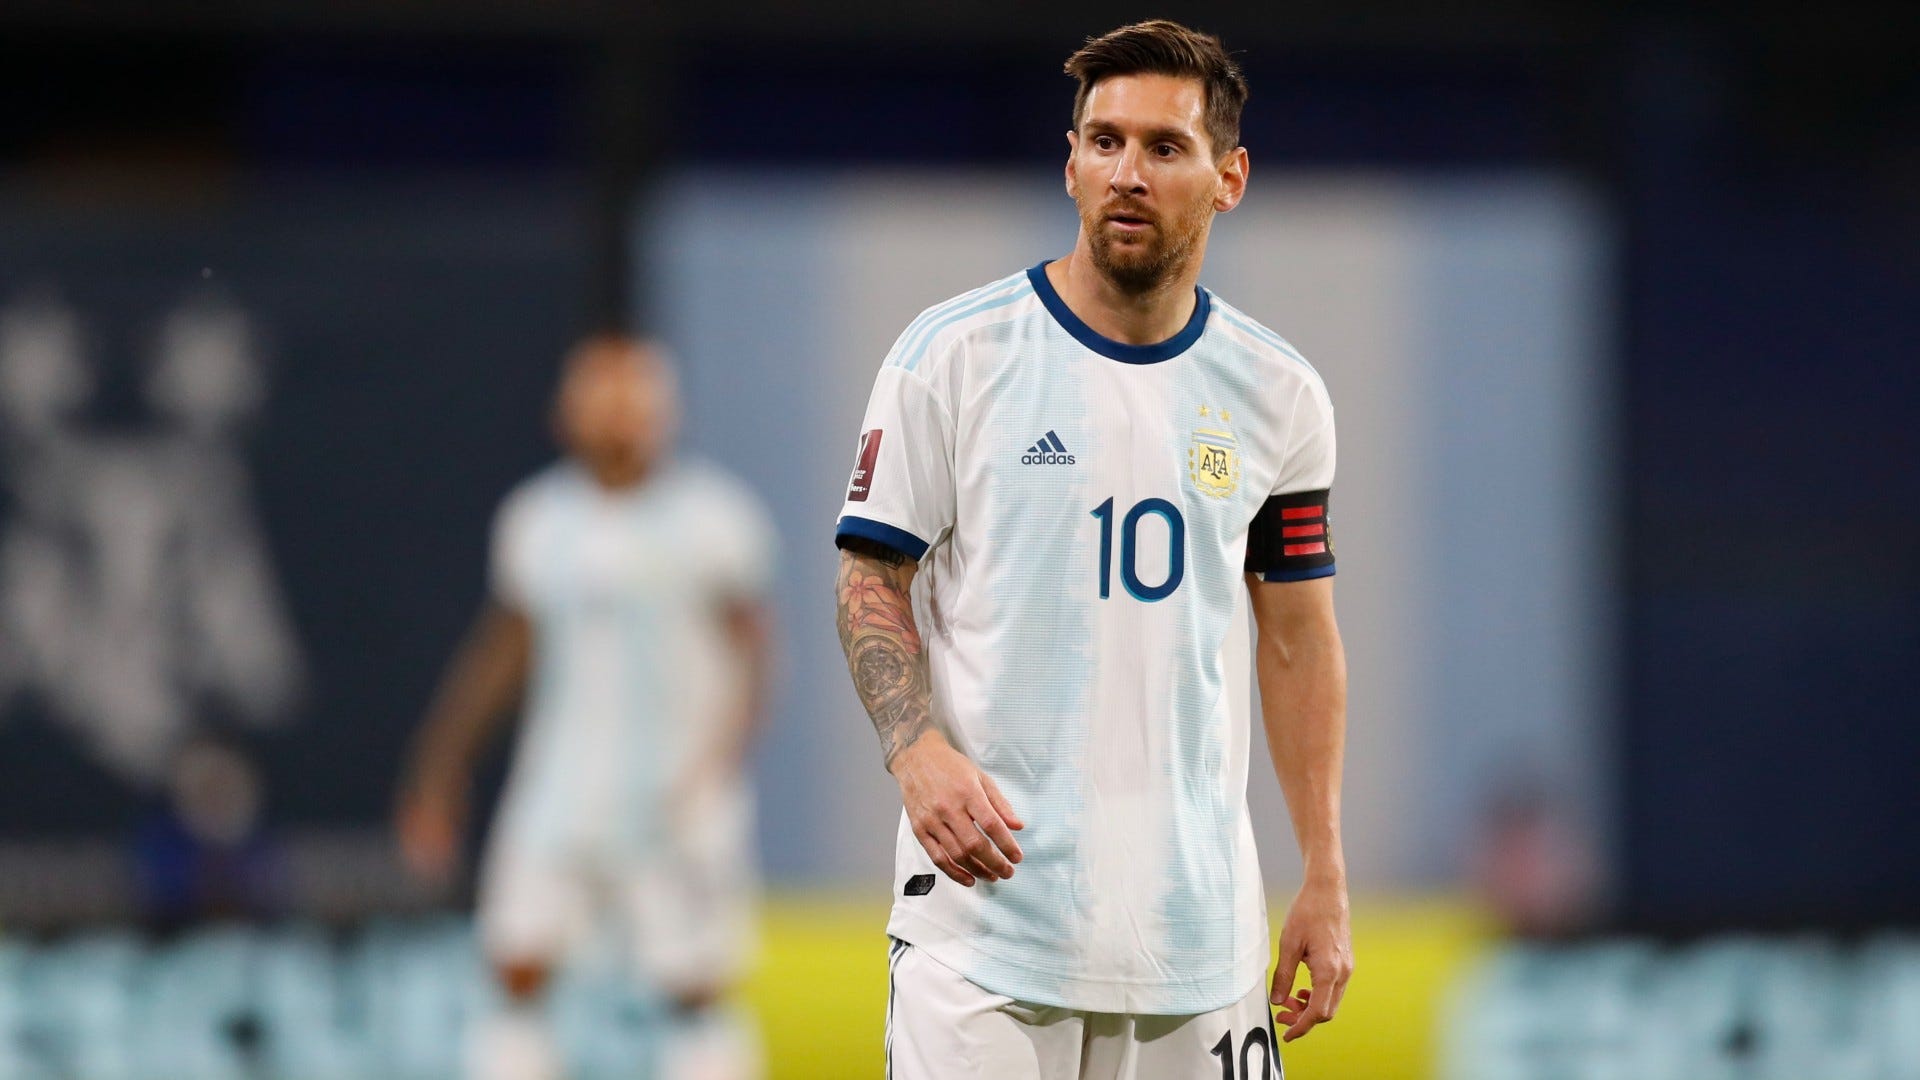 Xem hình ảnh của siêu sao bóng đá nổi tiếng Lionel Messi trong trang phục của Barcelona và Argentina. Các đường cong của anh ta trên sân cỏ sẽ khiến bạn trầm trồ và ngưỡng mộ không ngừng.